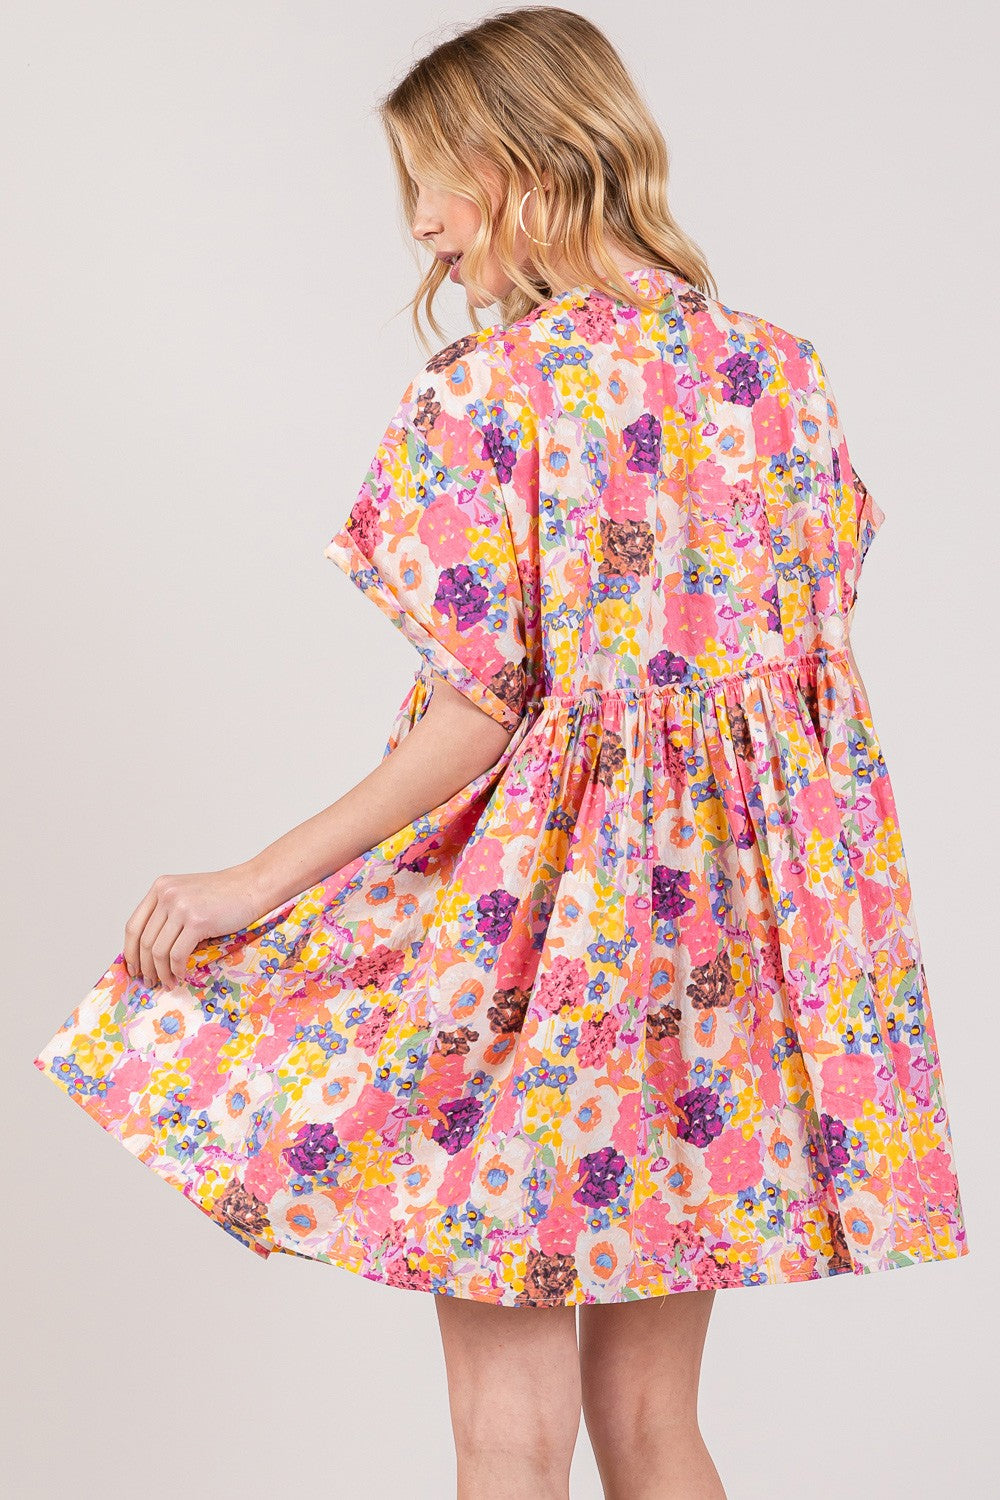 SAGE + FIG Floral Short Sleeve Babydoll Dress with Pockets Trendsi